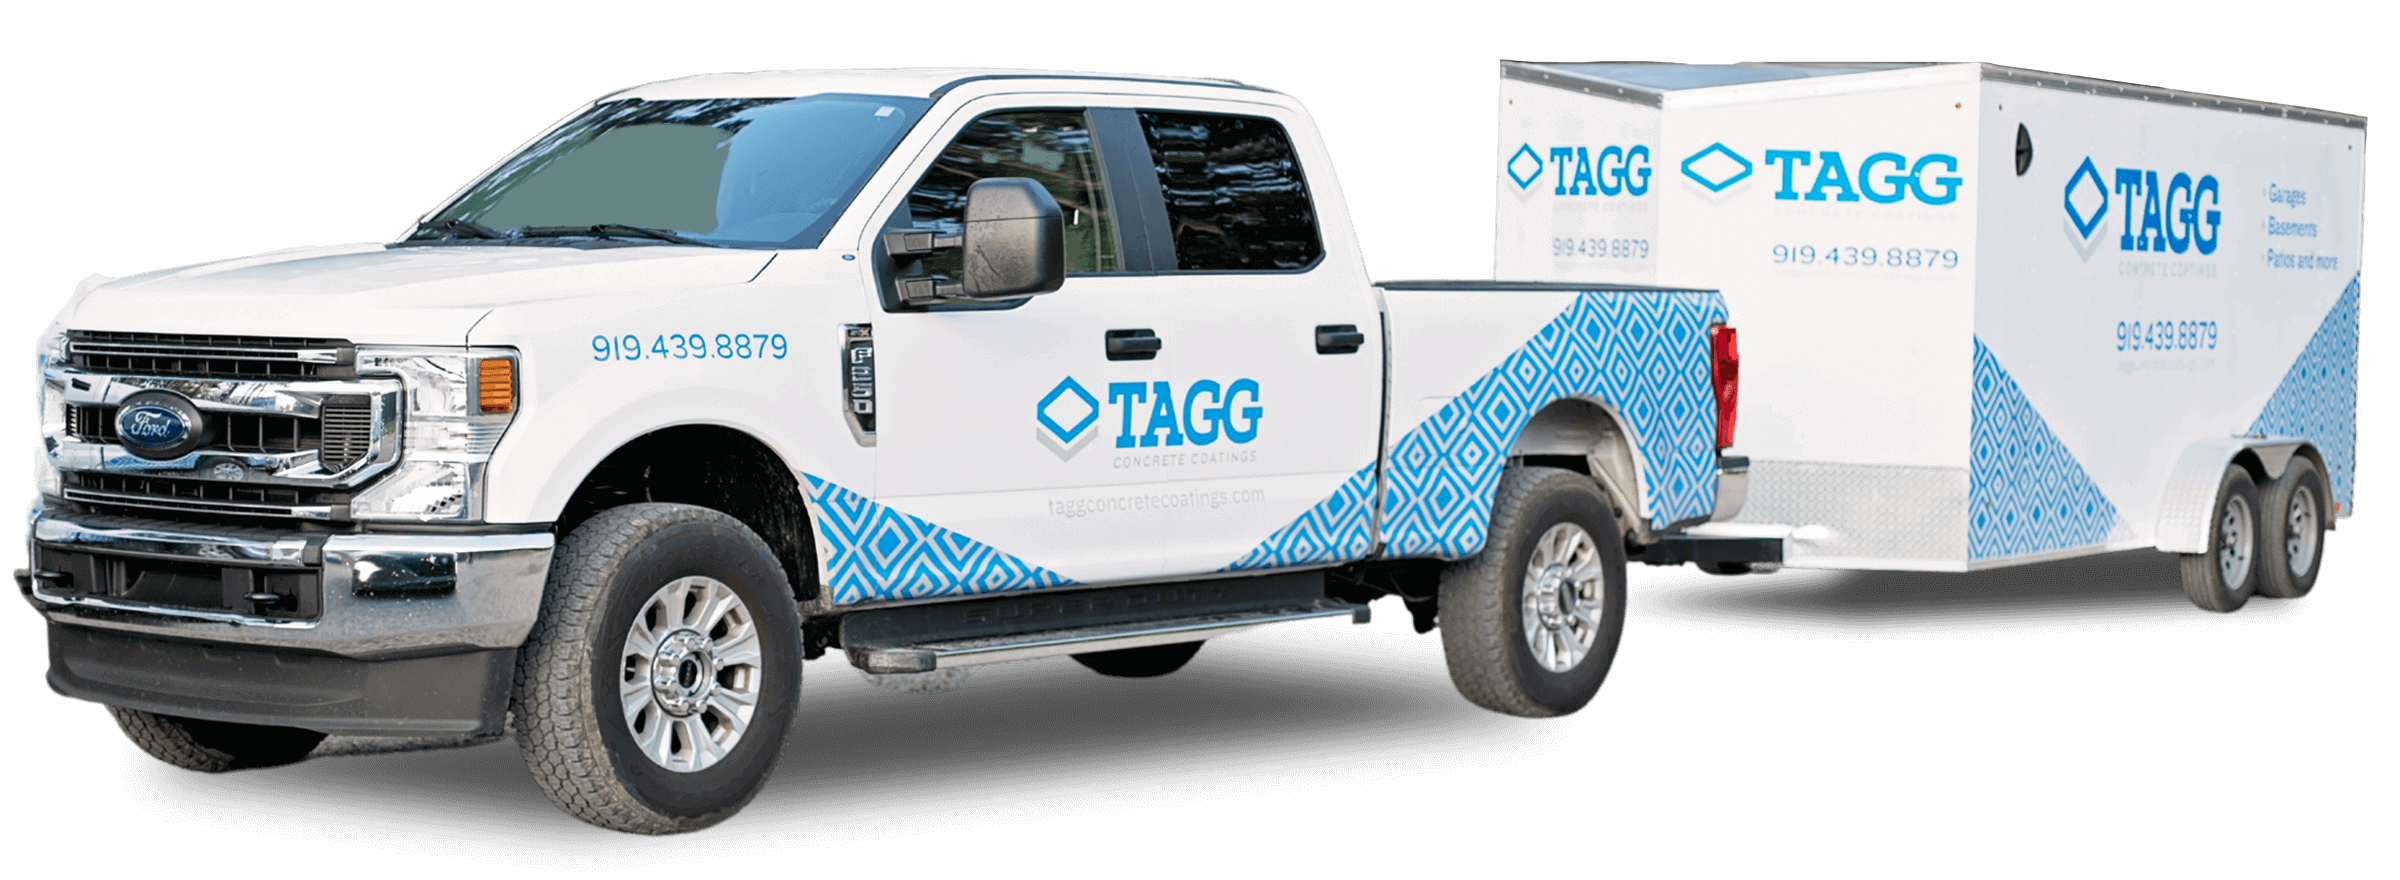 TAGG Concrete Coatings Van